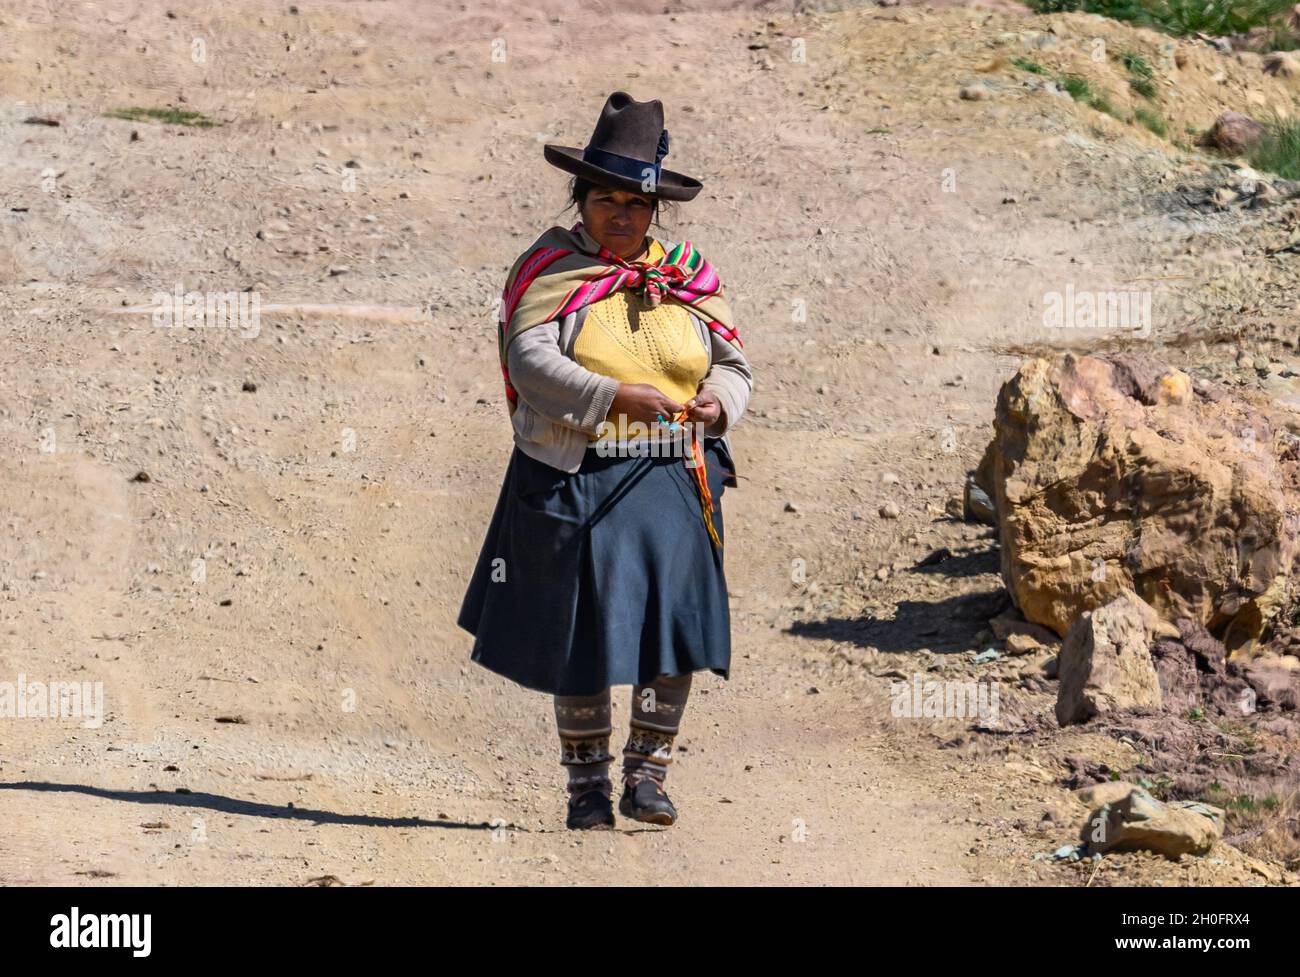 Eine gebürtige Peruanerin strickt beim Gehen auf einer unbefestigten Straße. Peru, Südamerika. Stockfoto